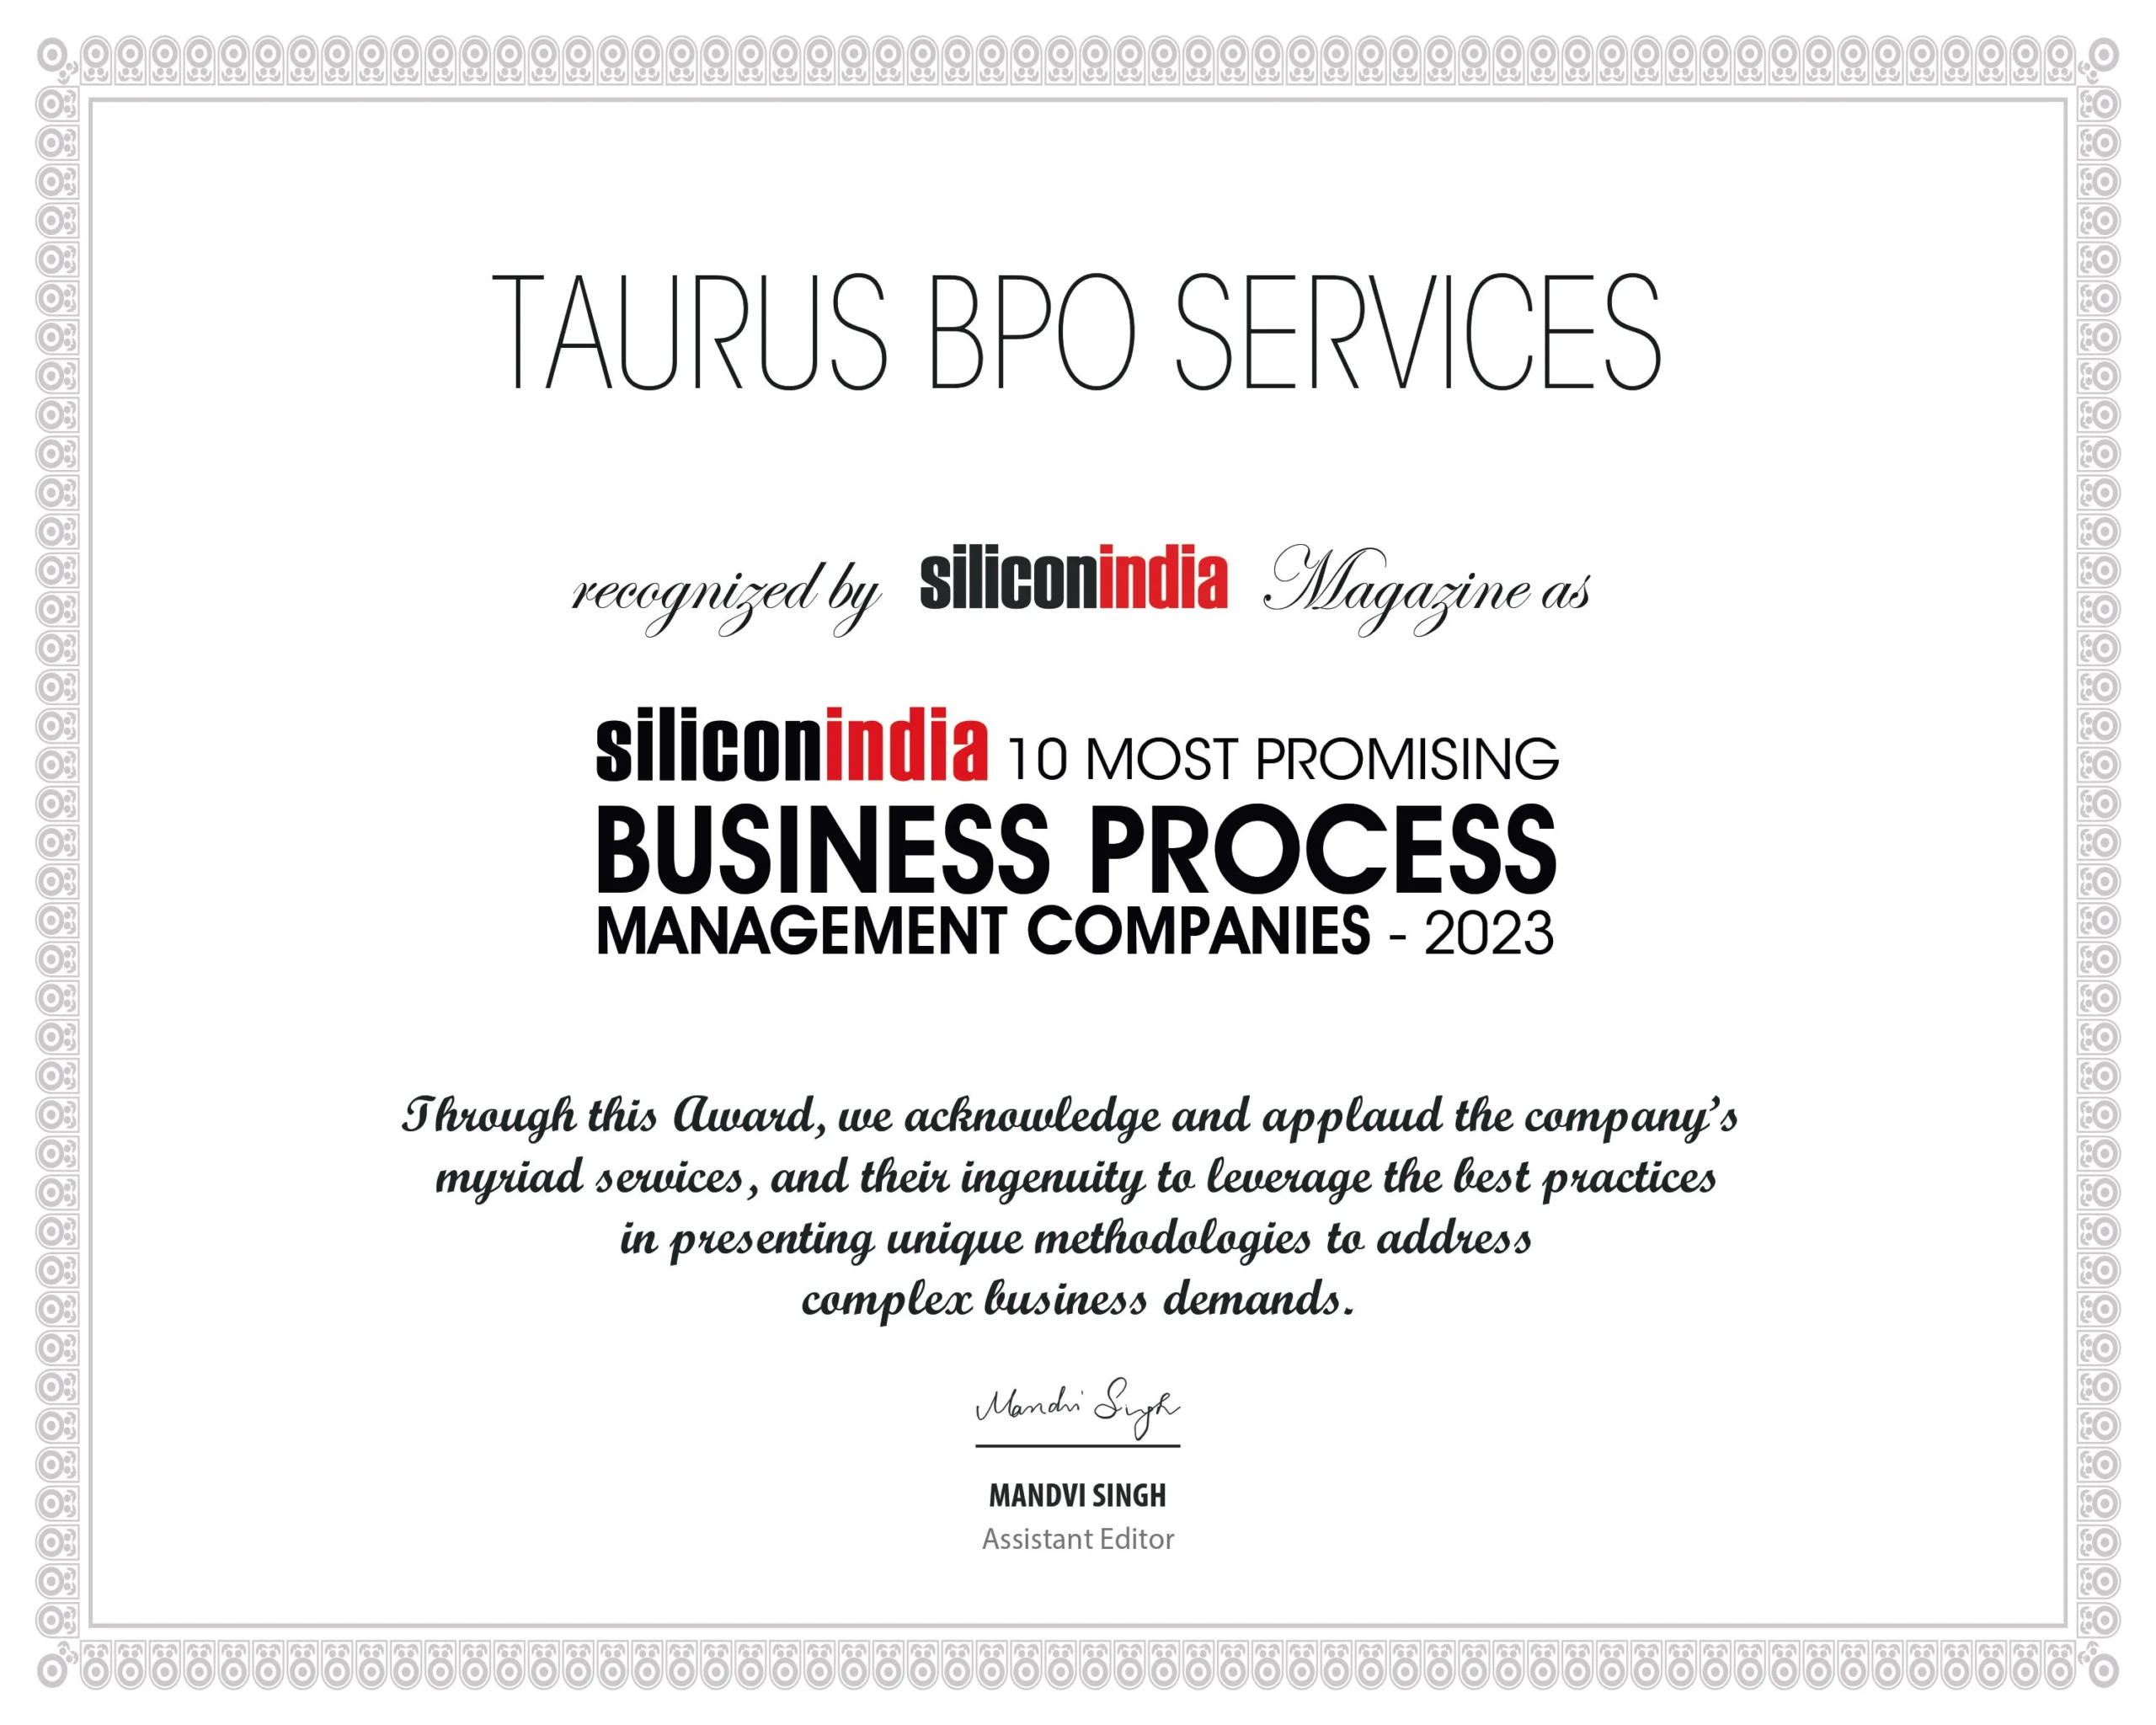 taurus bpo services certificate489730